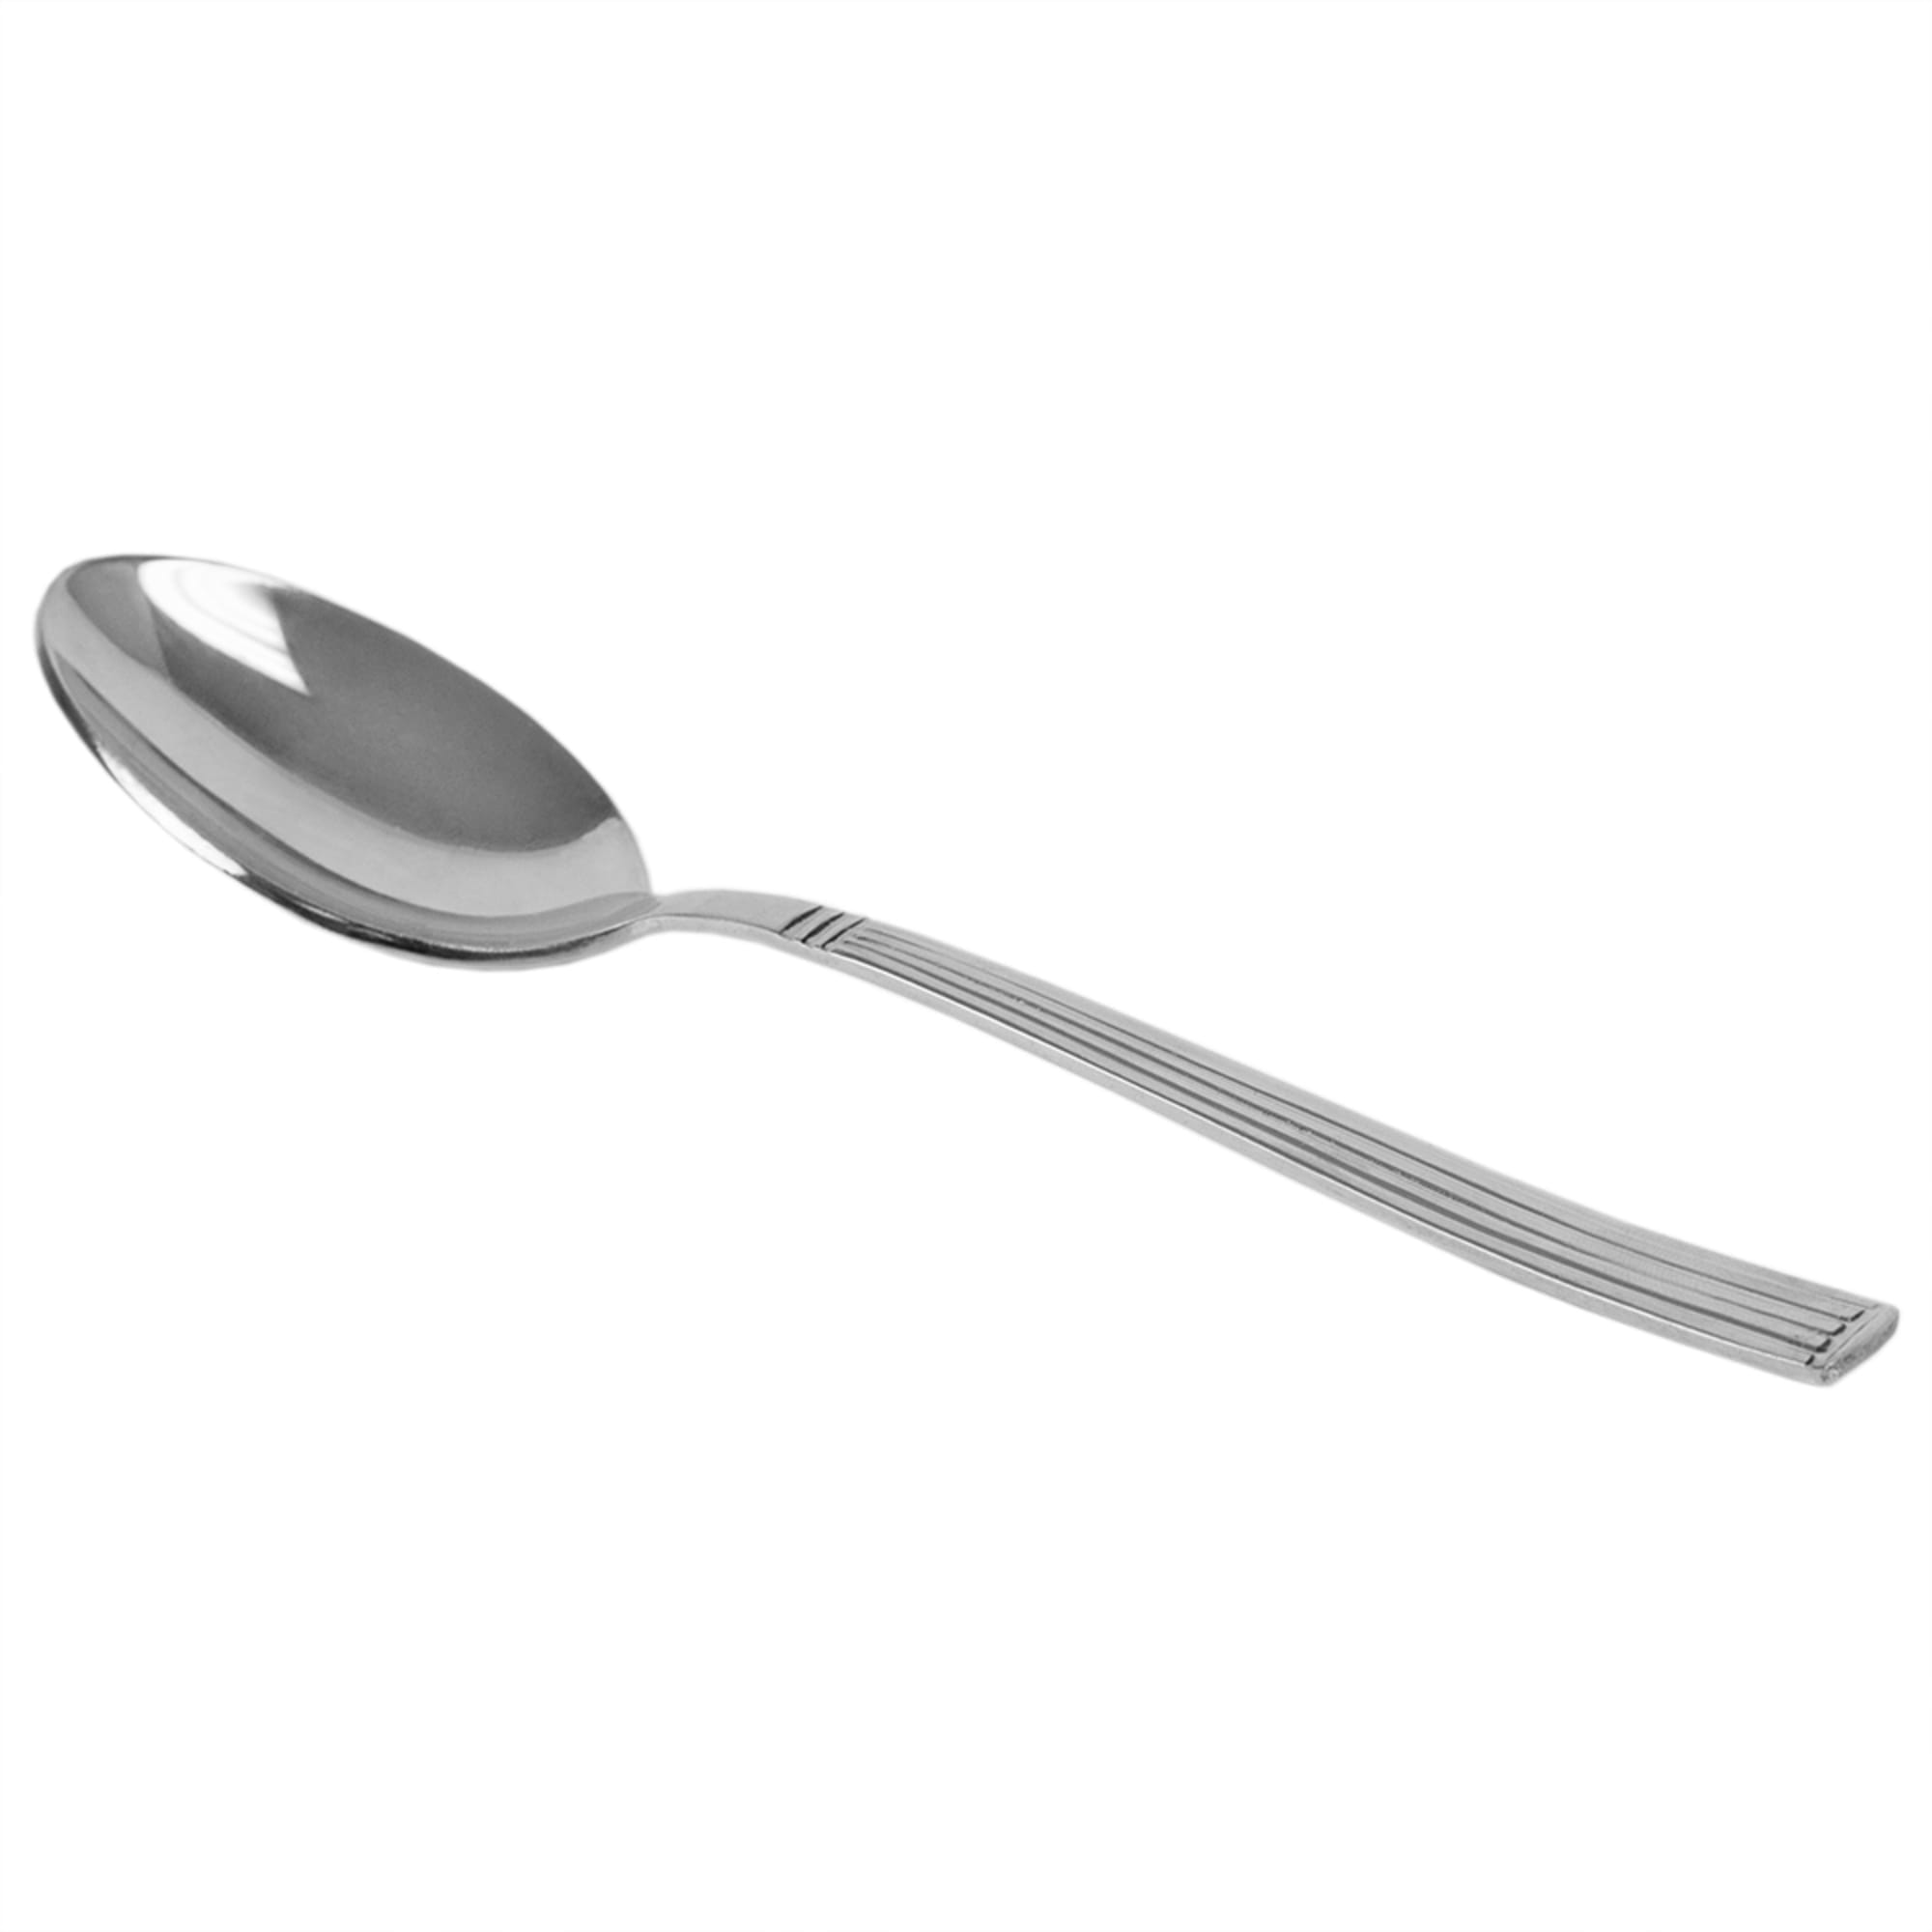 Silver 4-Piece Dinner Spoon Set - Mirror Finish Stainless Steel Flatware Dinner Utensils, Essential Kitchen Cutlery Set, Dishwasher Safe $2.00 EACH, CASE PACK OF 24